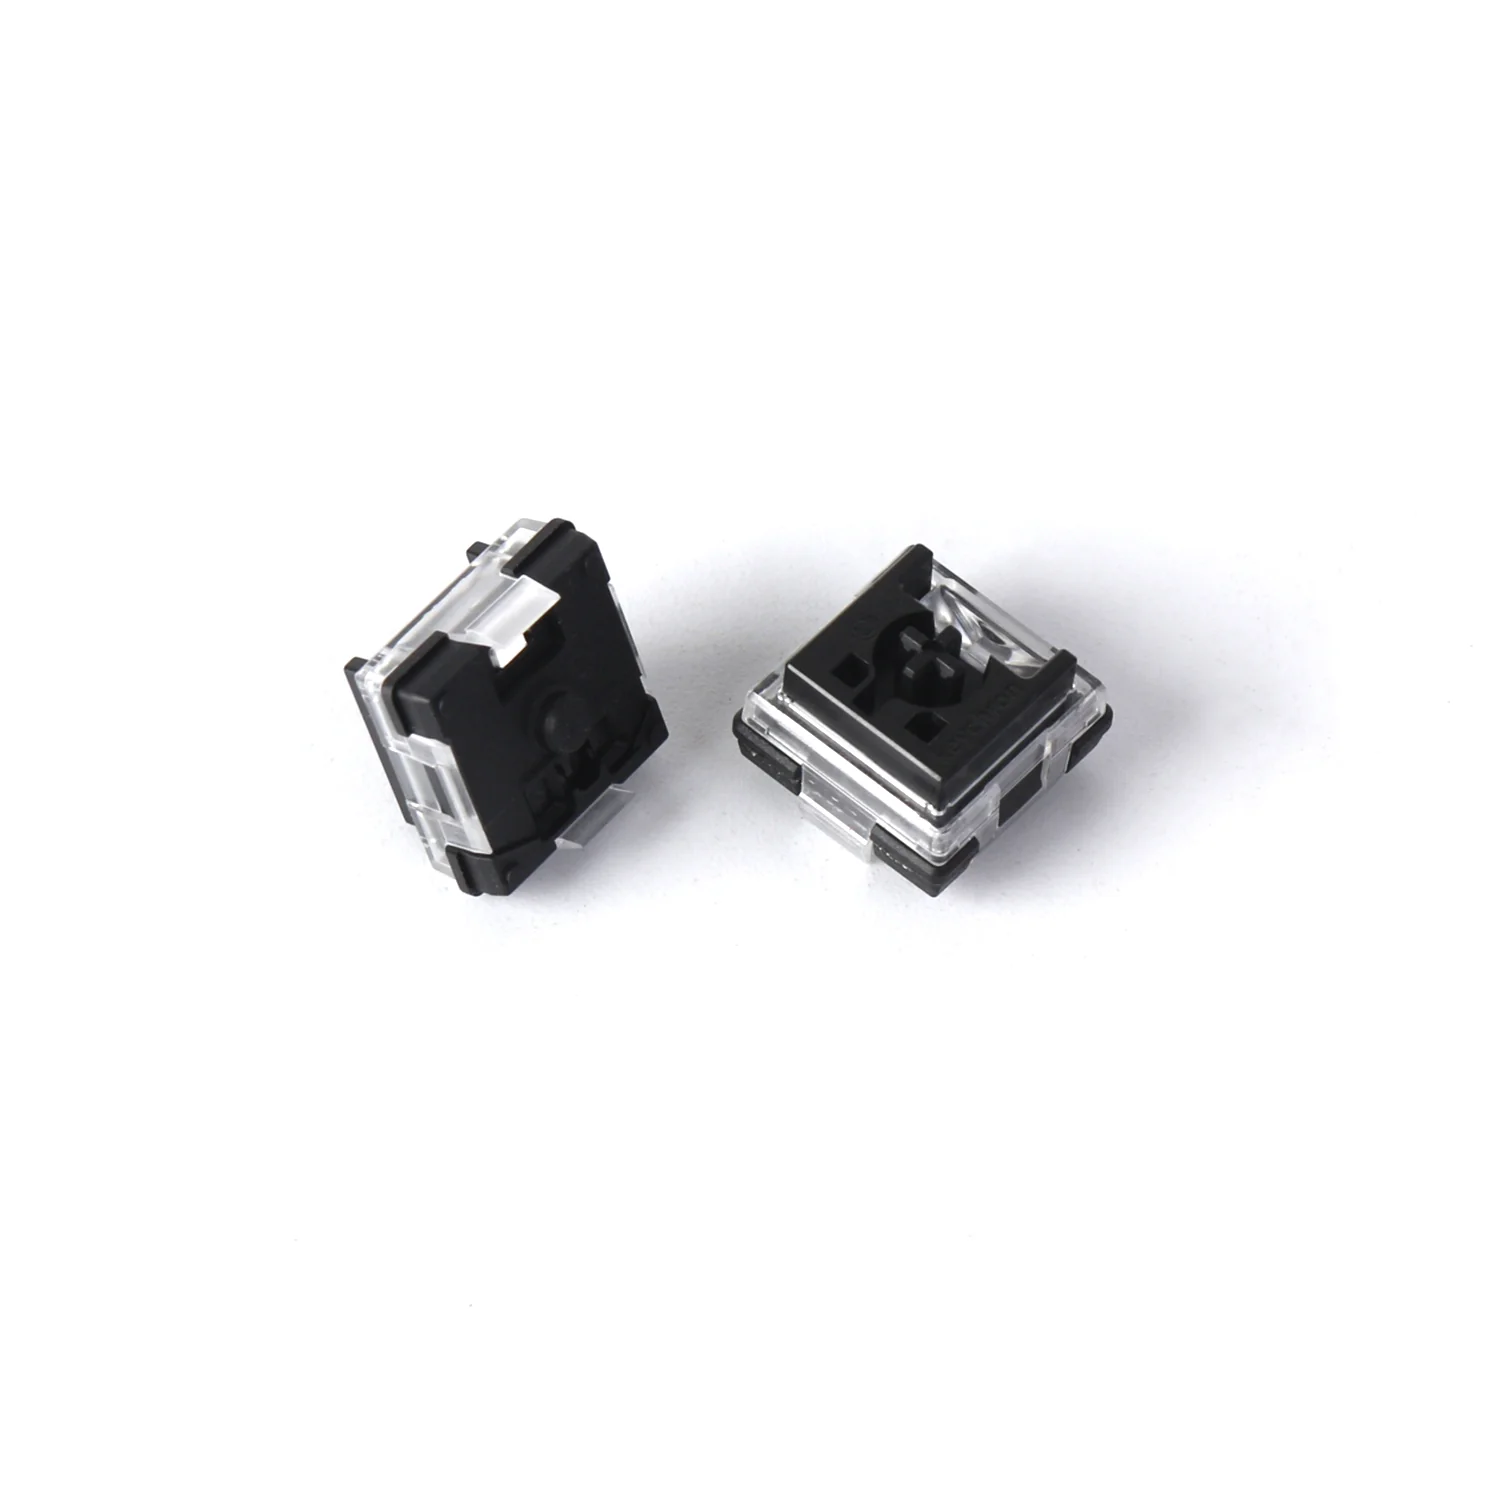 Свичи для клавиатур Keychron Low Profile Optical MX Black (Z24)